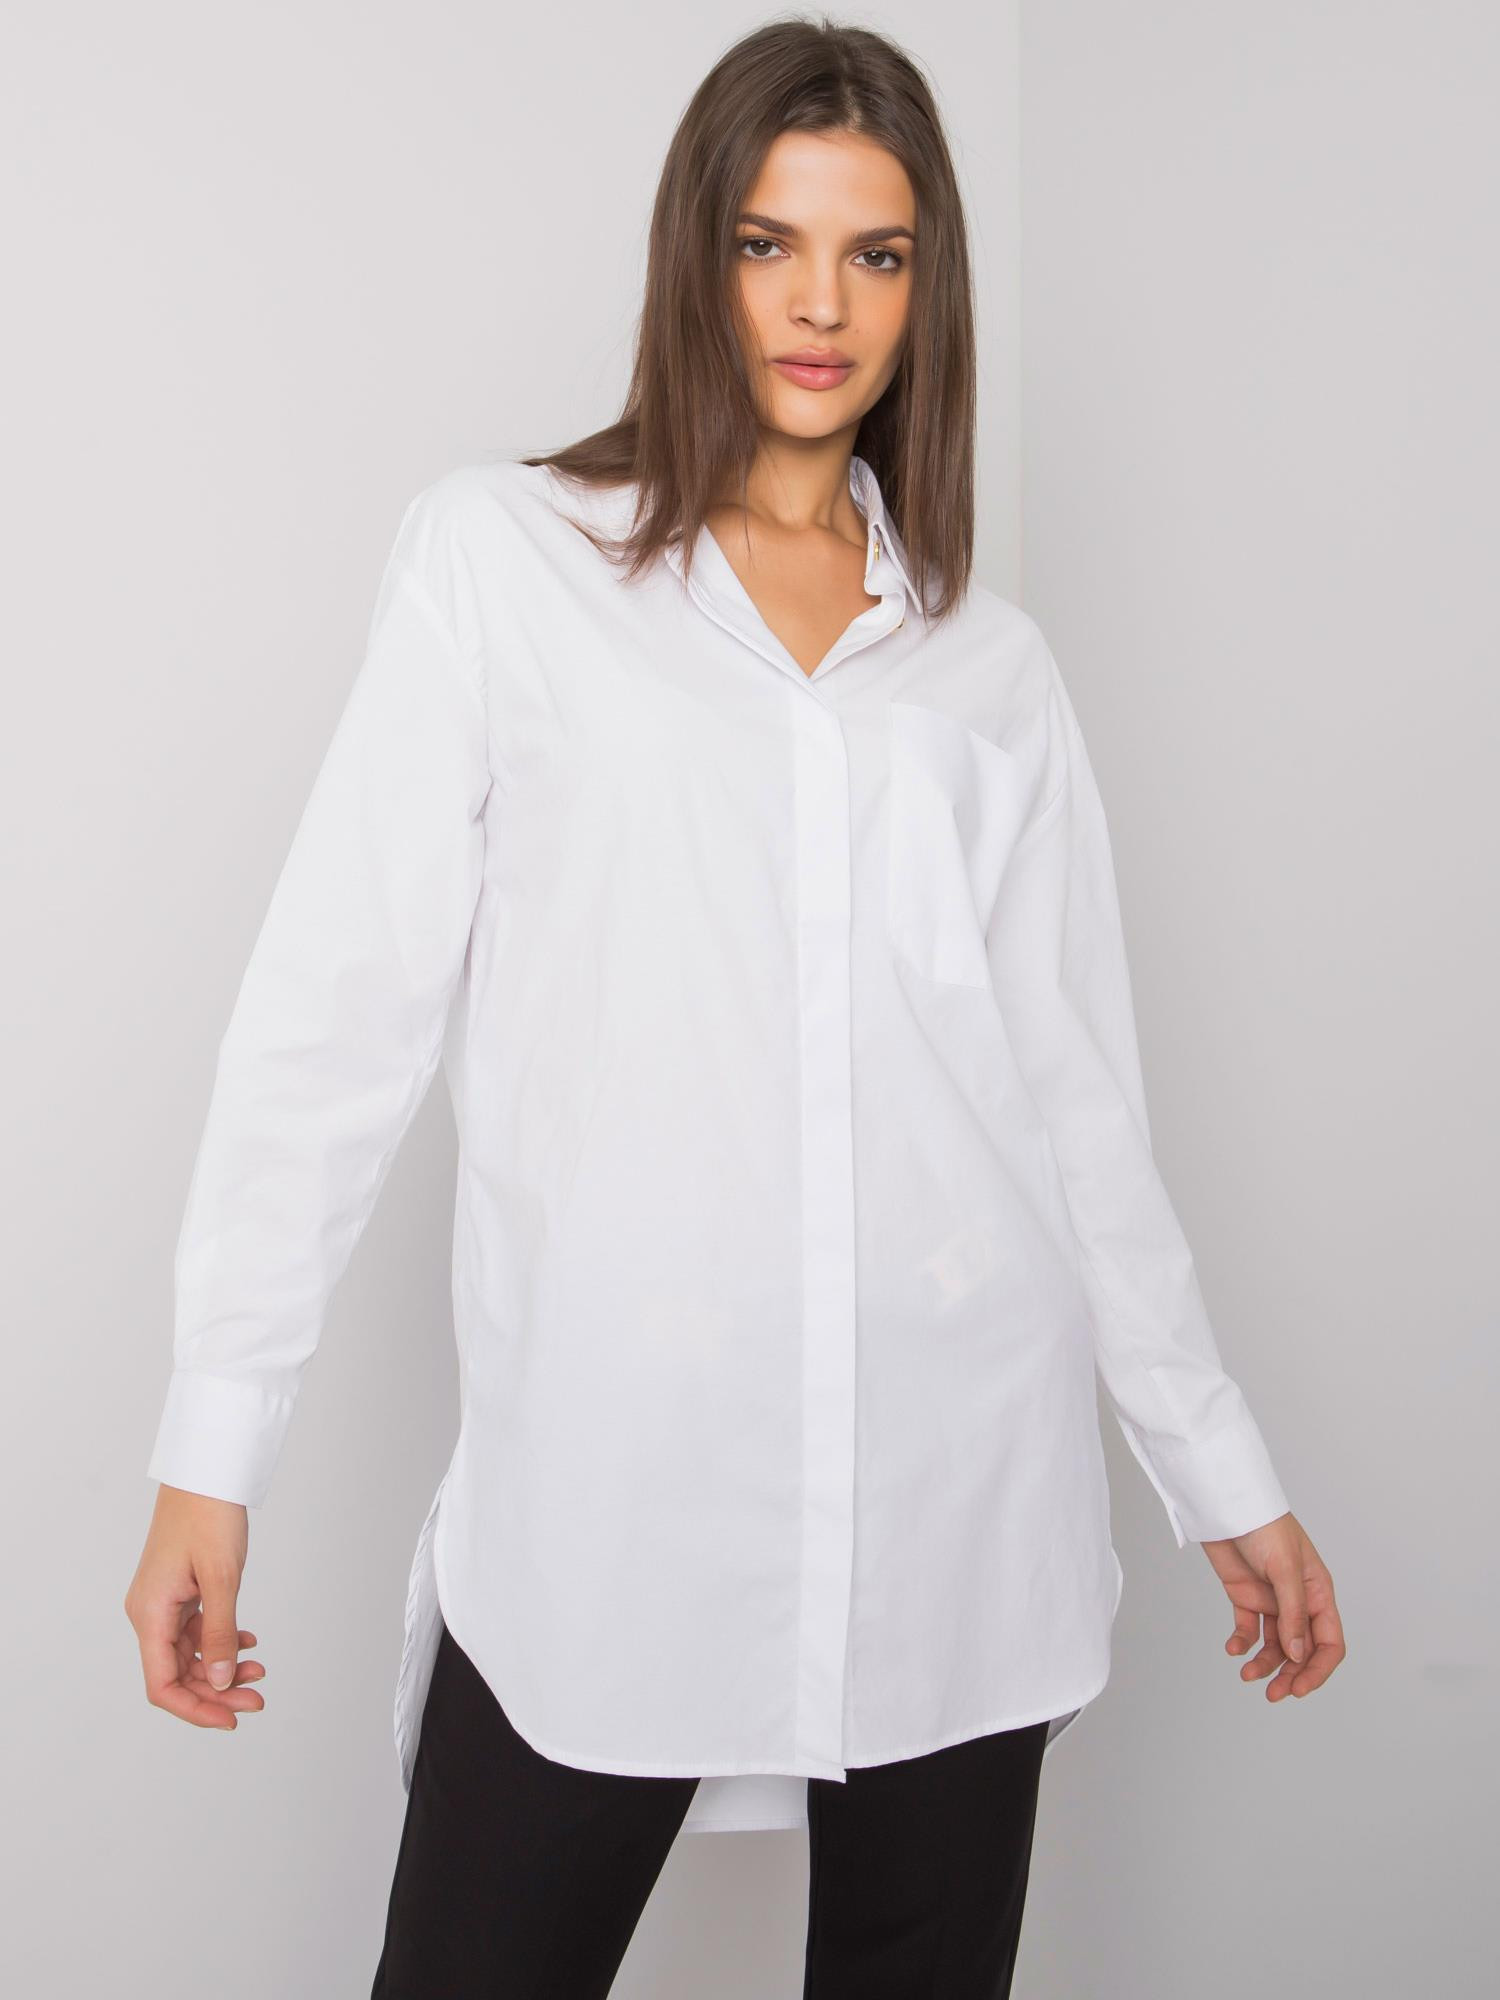 Dámská košile EM KS 005.34 bílá - Exmoda one size